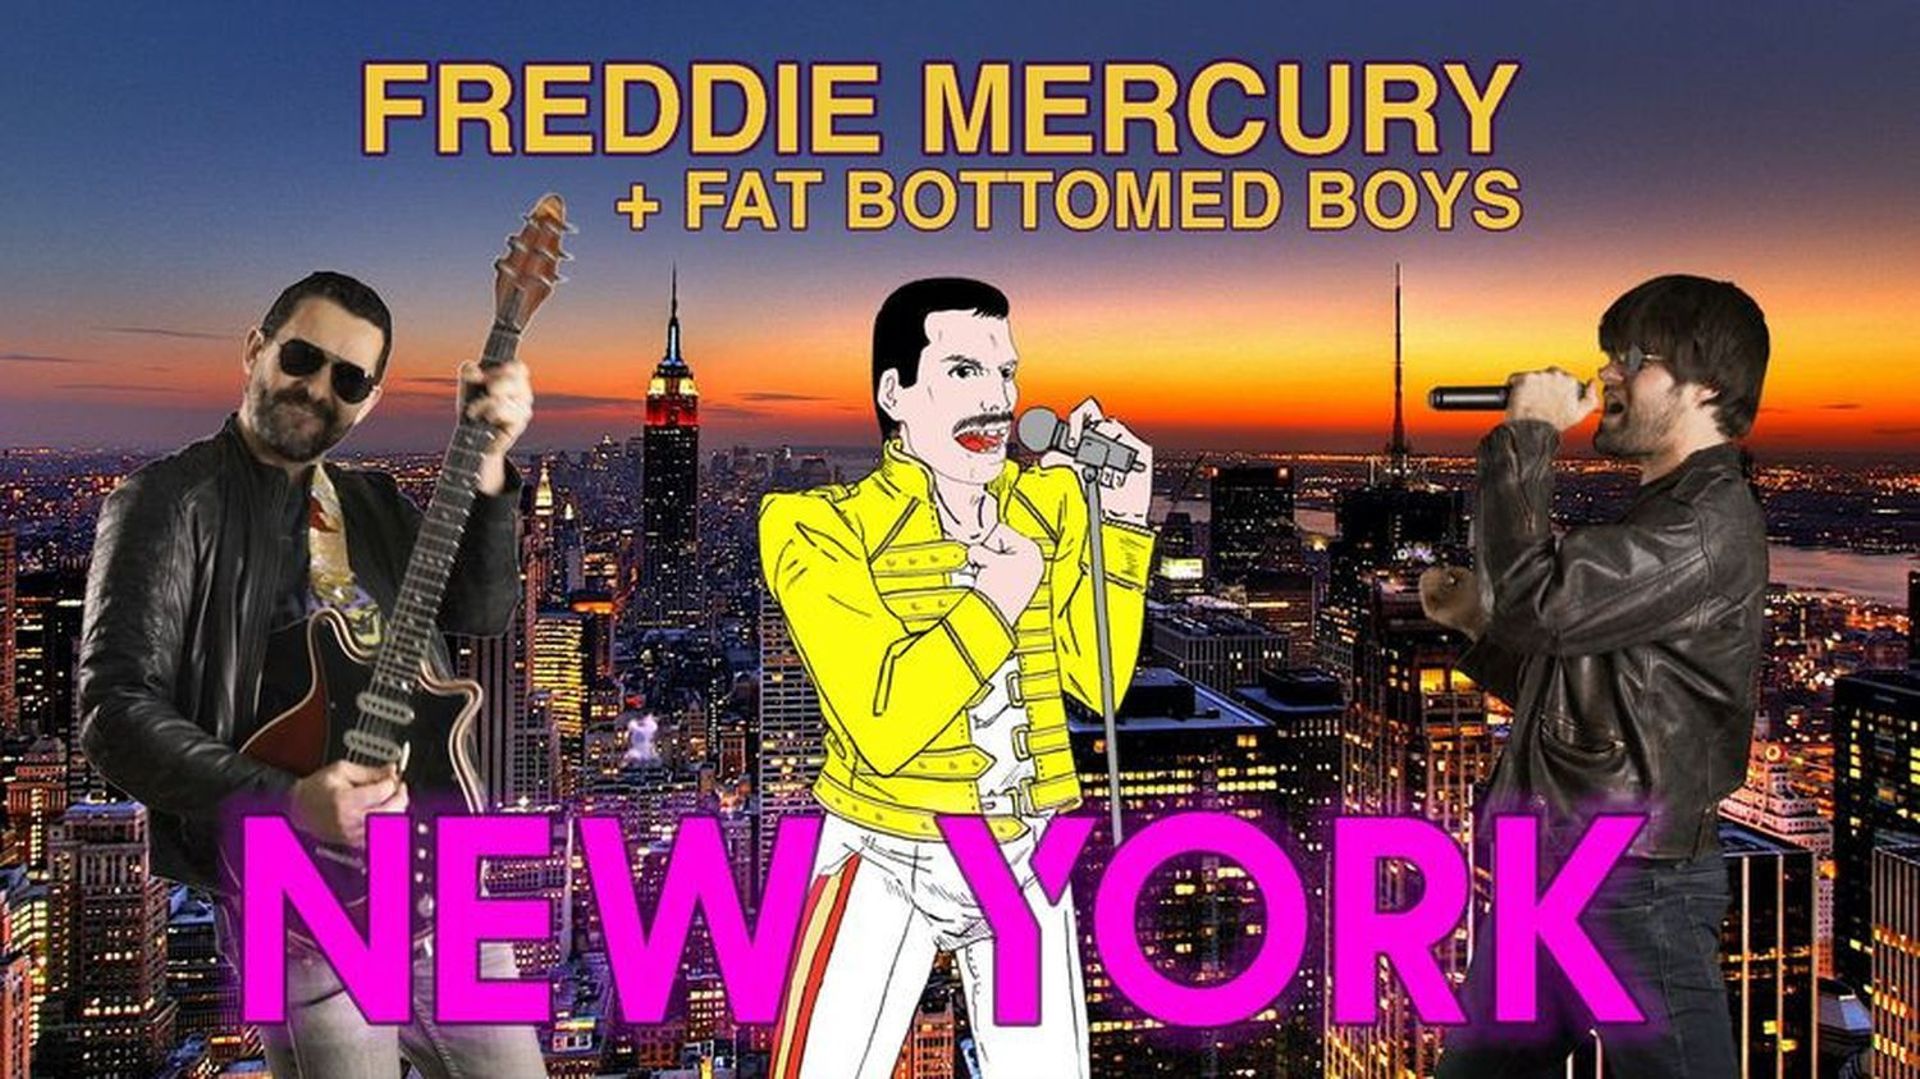 [Zapping 21] Le groupe Fat Bottomed Boys réalise un duo virtuel (et un jeu vidéo)  avec Freddie Mercury